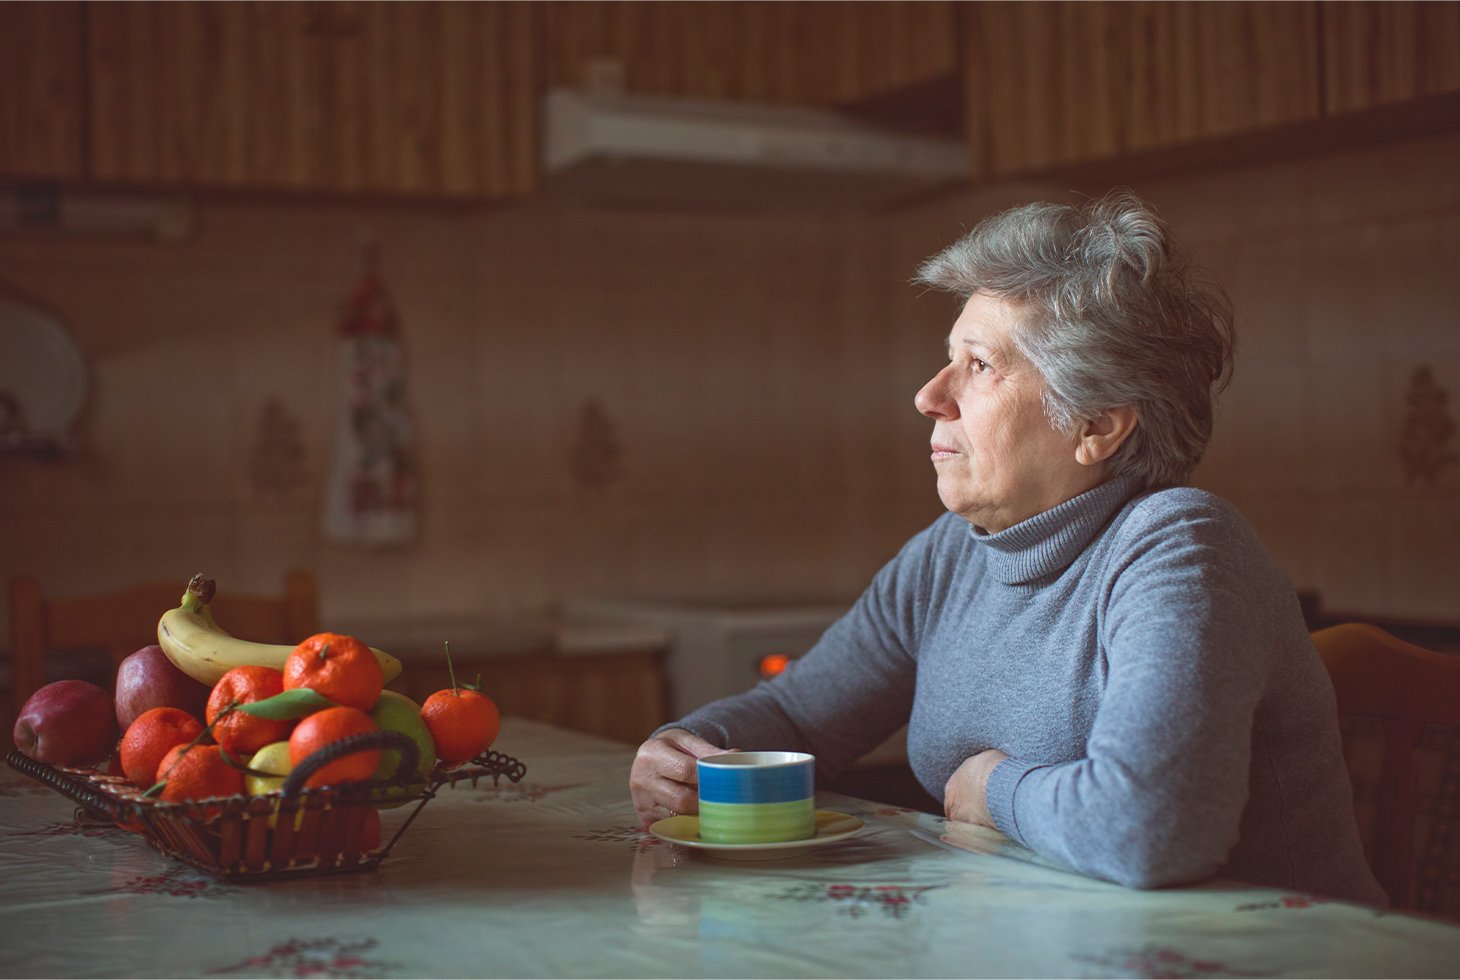 Portrait d’une femme senior prenant un café dans sa cuisine. Visuel pour illustrer la thématique de l’incontinence chez les personnes âgées.